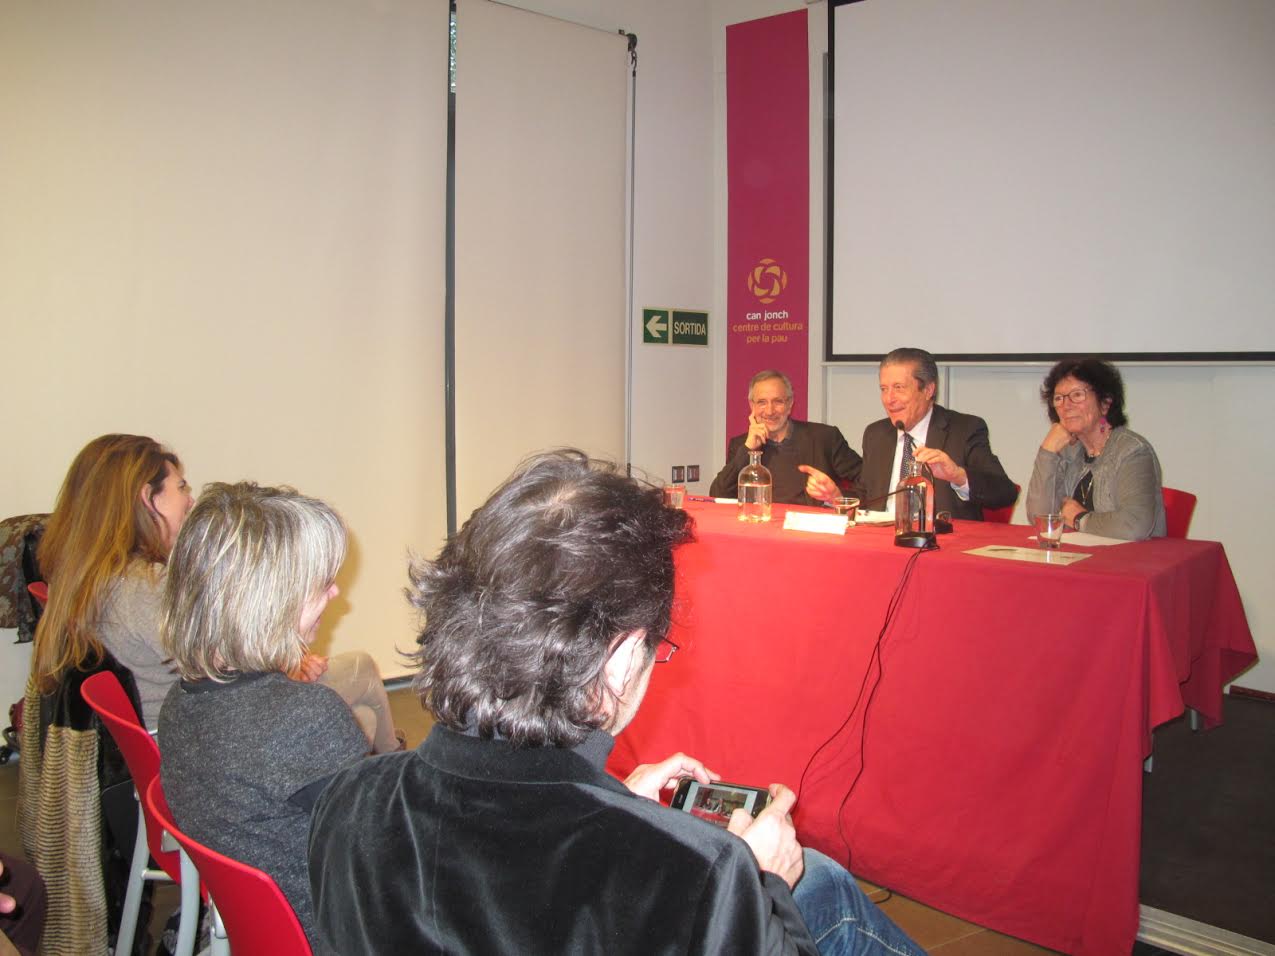 Mayor Zaragoza, al centre entre Josep Mayoral i Montserrat Ponsa, durant la presentació a Can Jonch